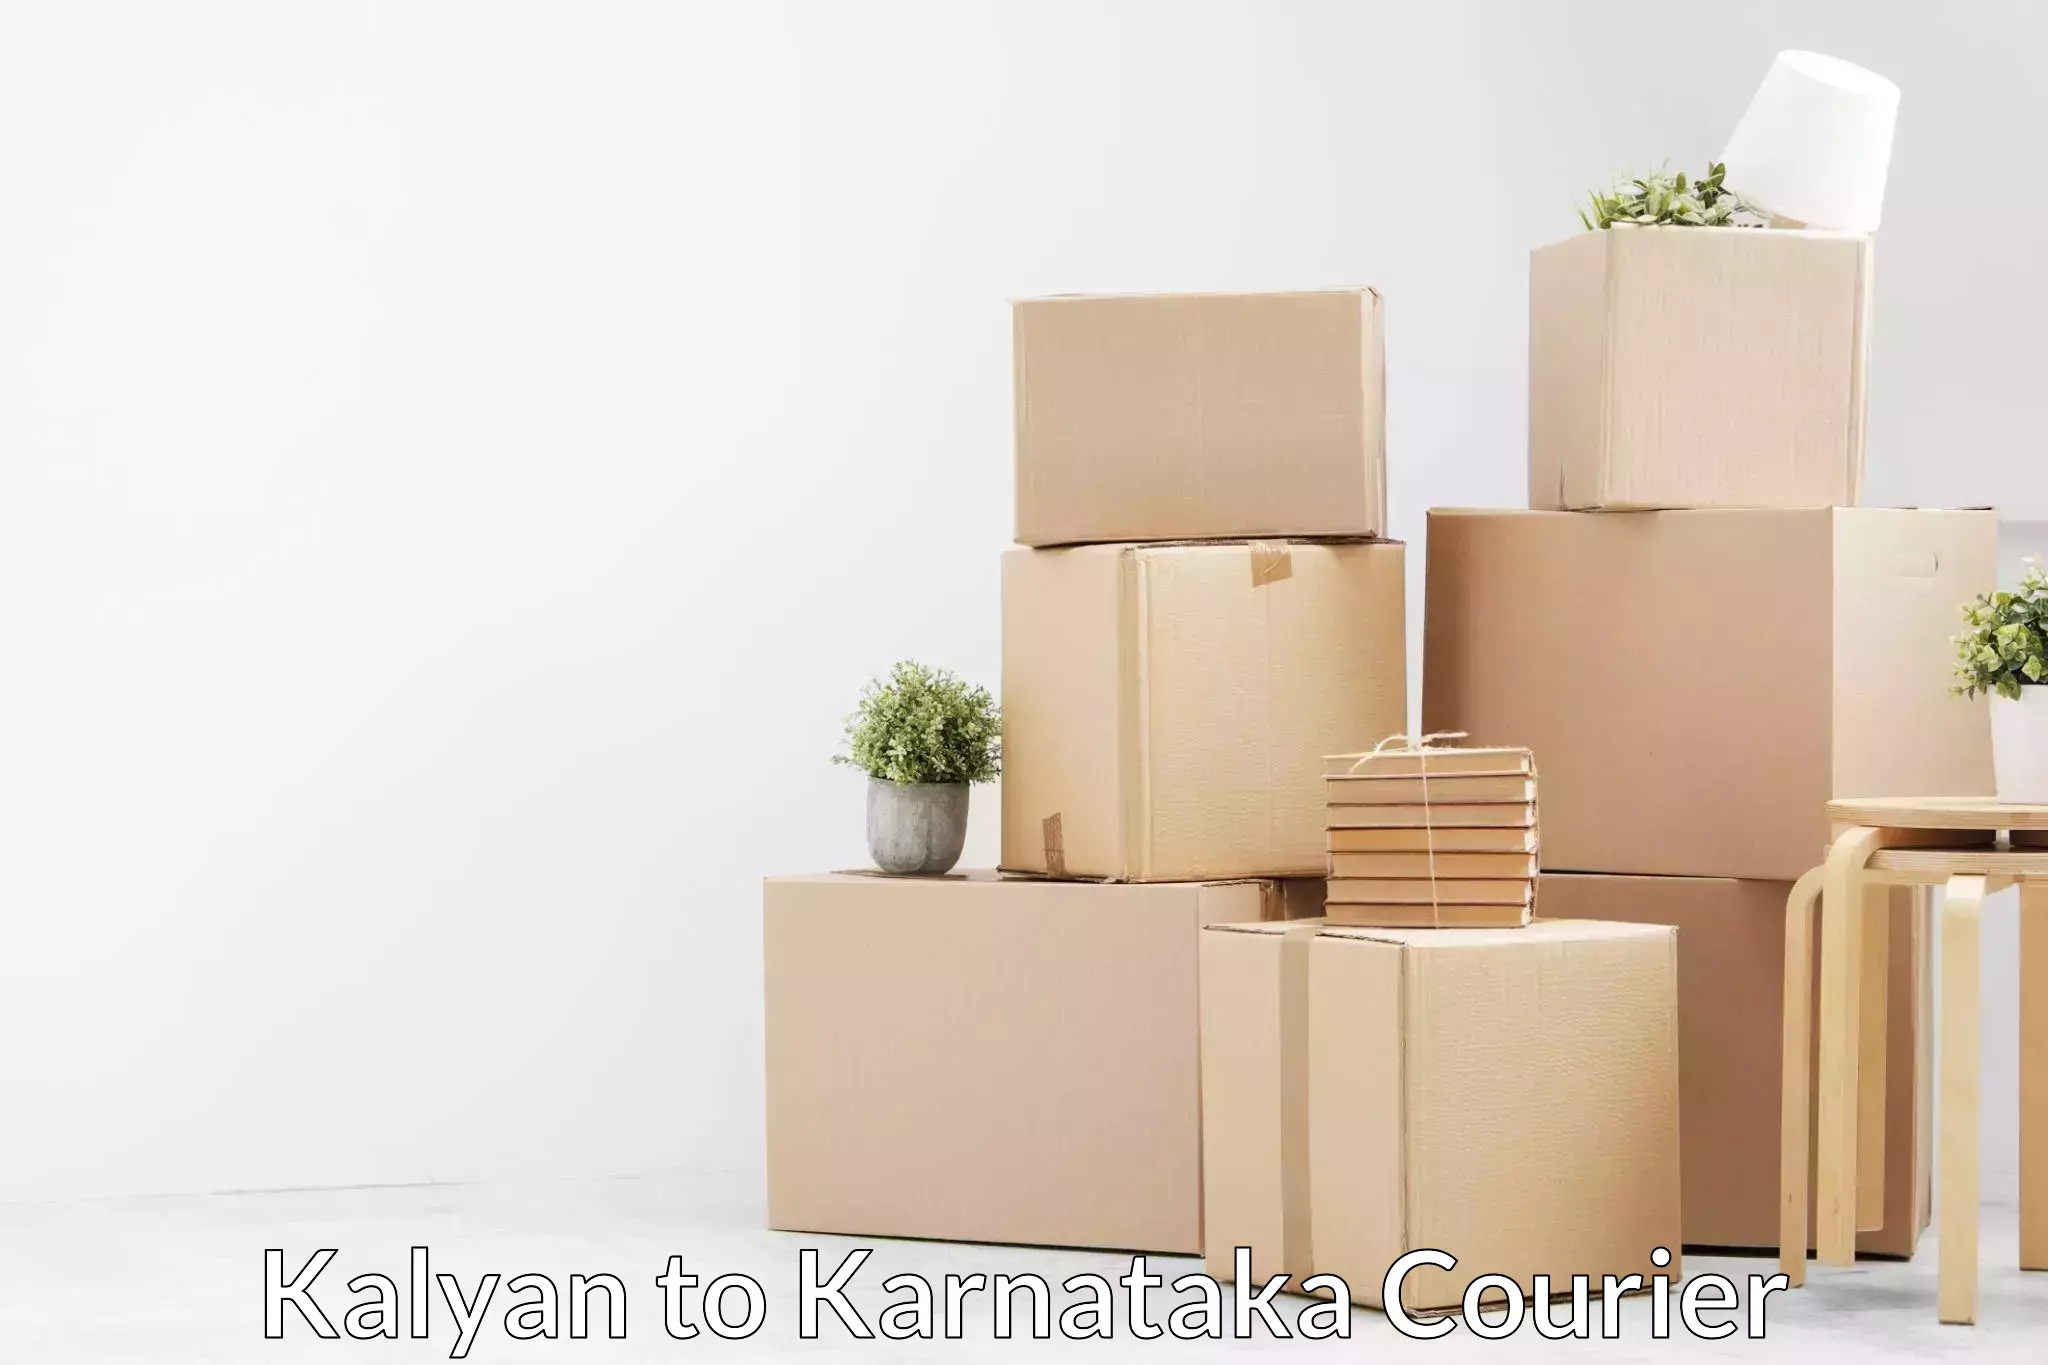 Professional packing services Kalyan to Tumkur